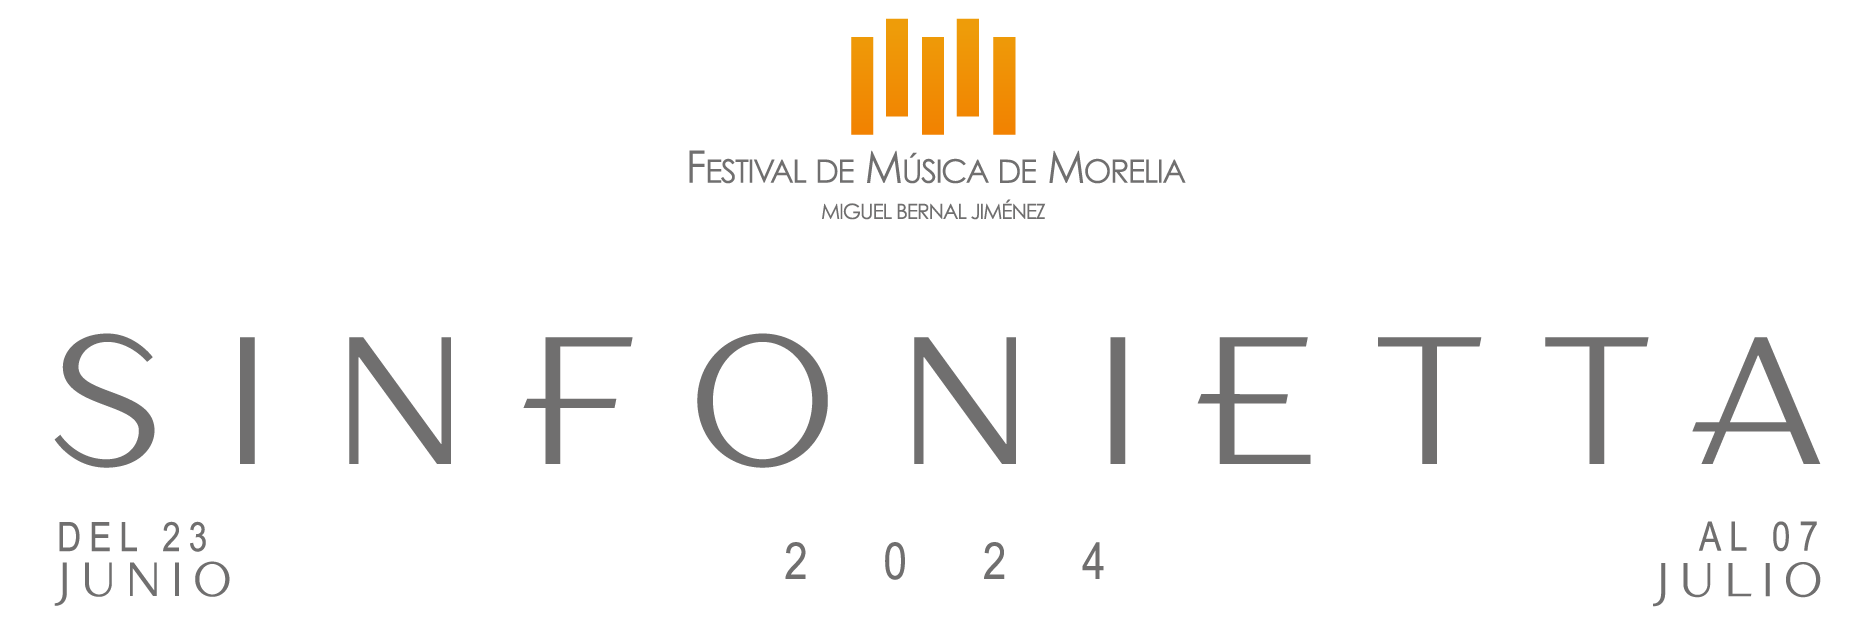 Festival de Música Miguel Bernal Jiménez (Versión Verano)